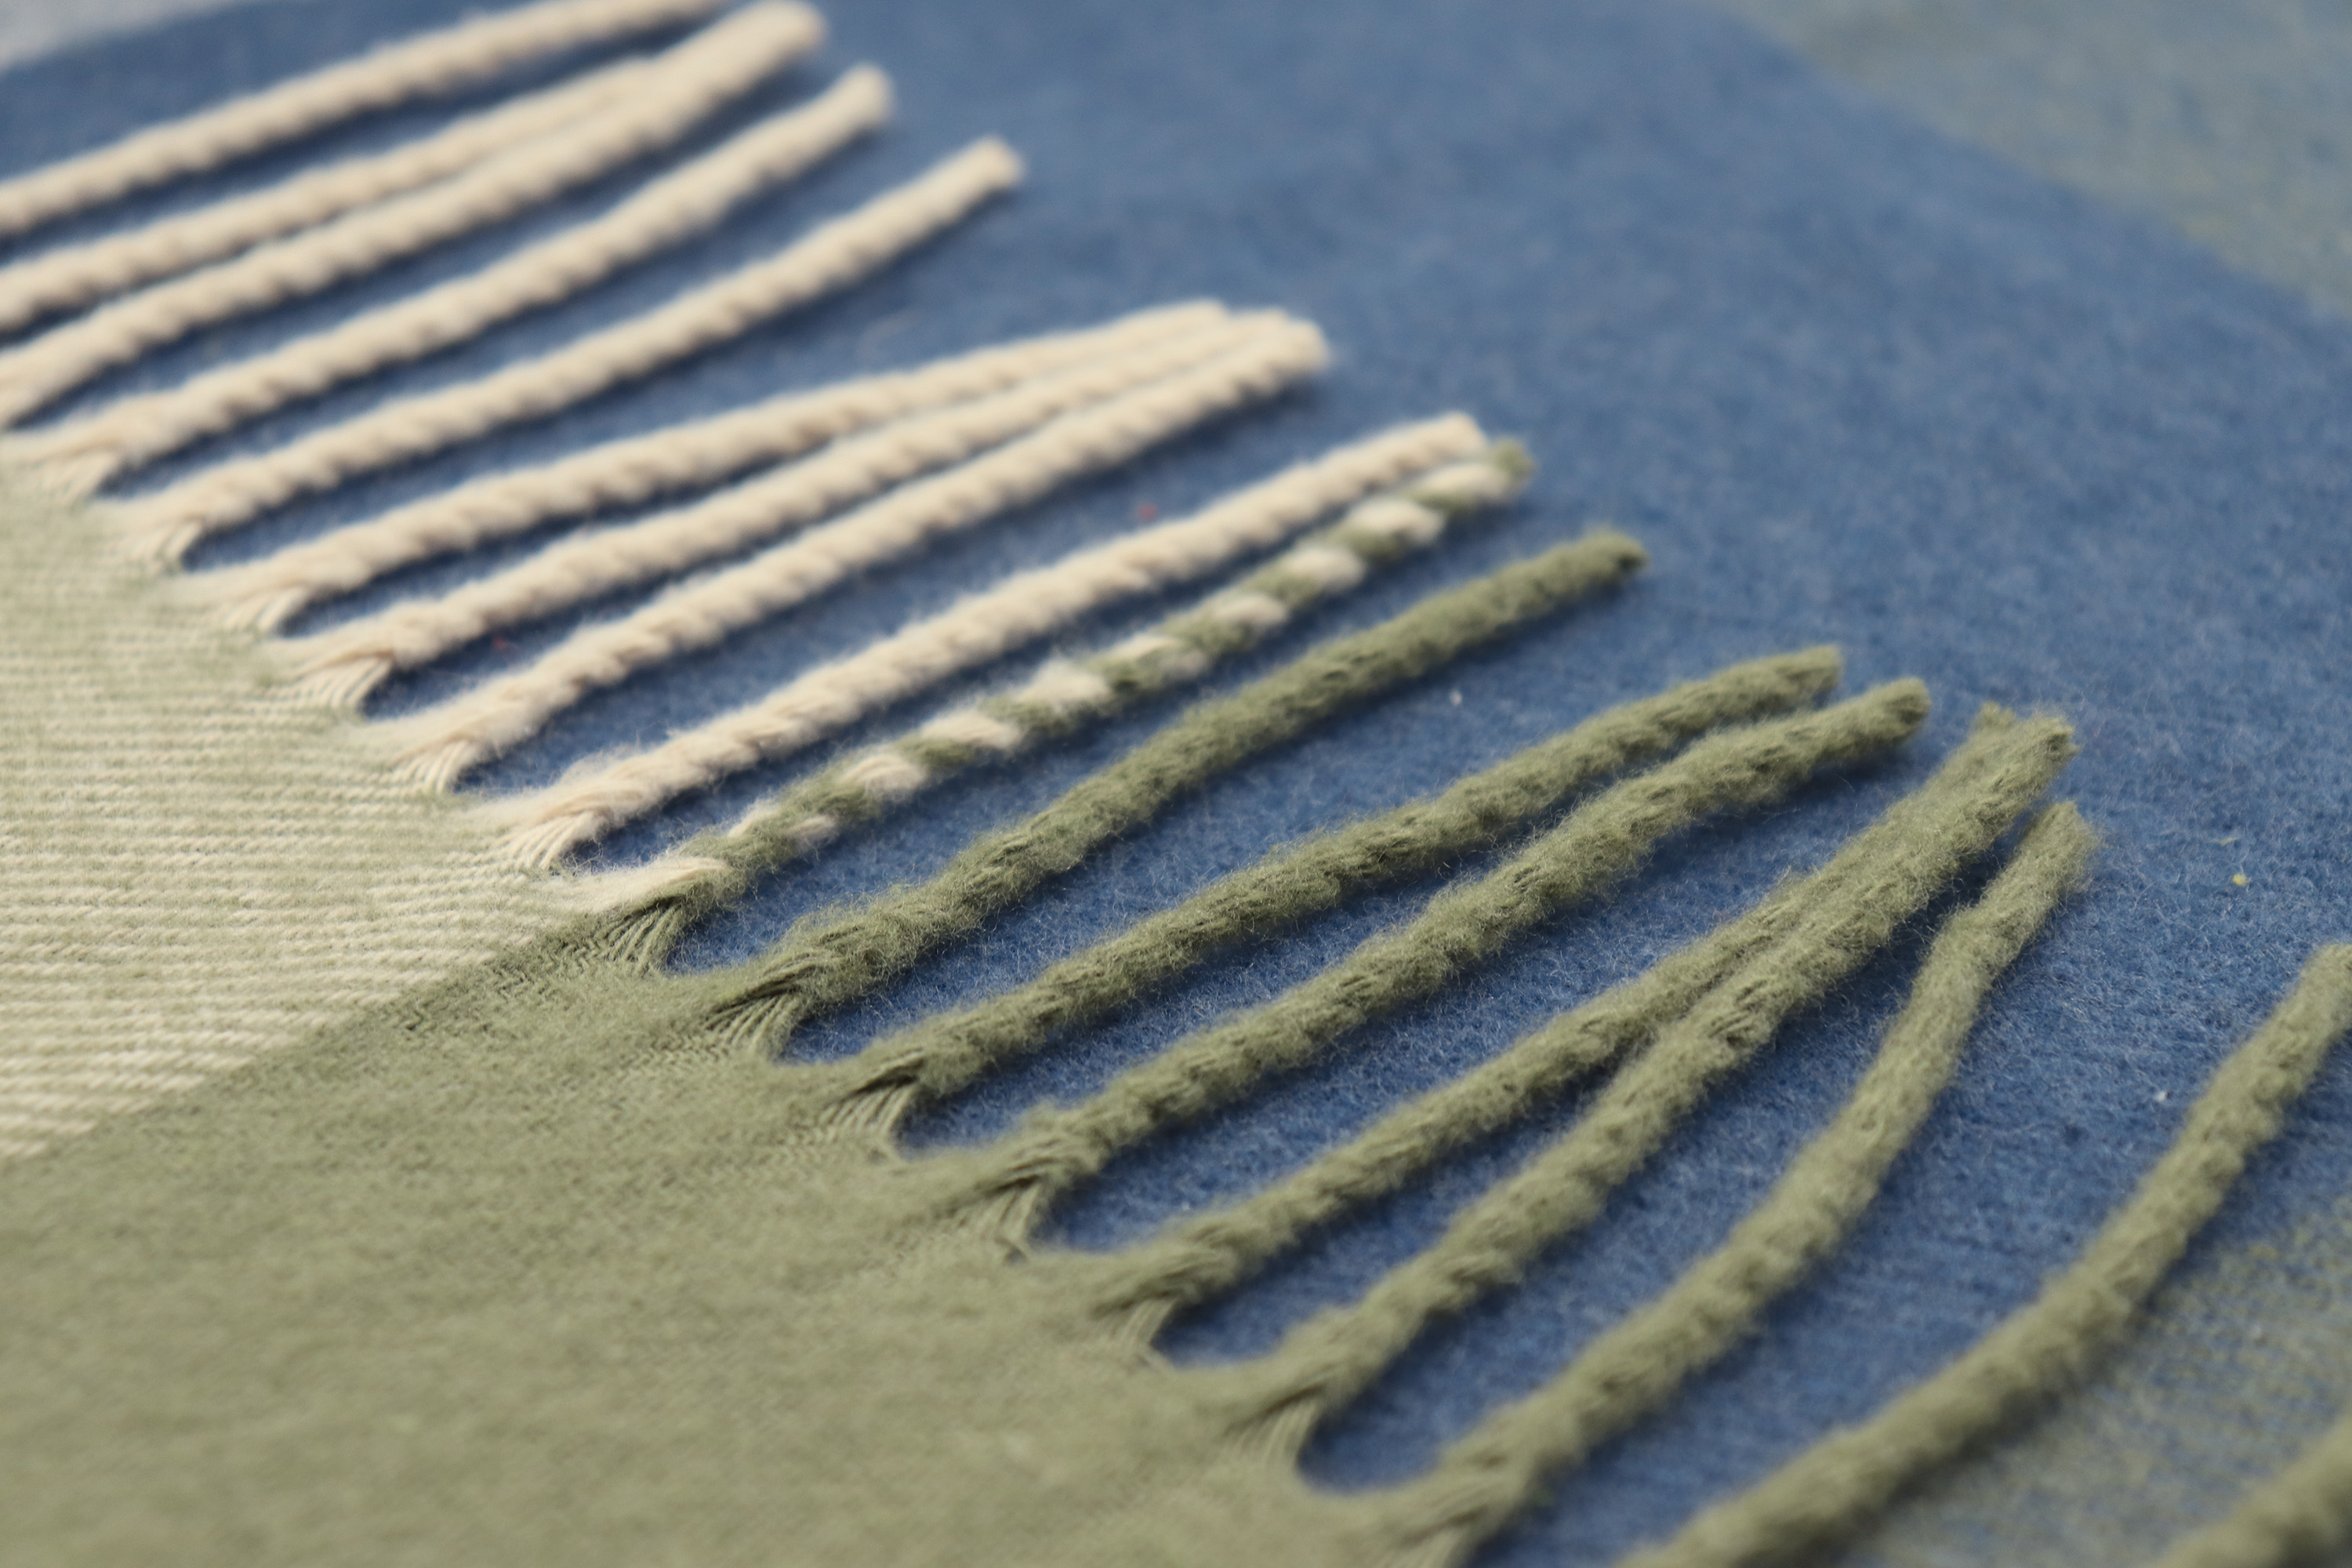 grün - blau kariertes Fransenplaid "Check Green" aus Baumwollmischung - Detailaufnahme Fransen